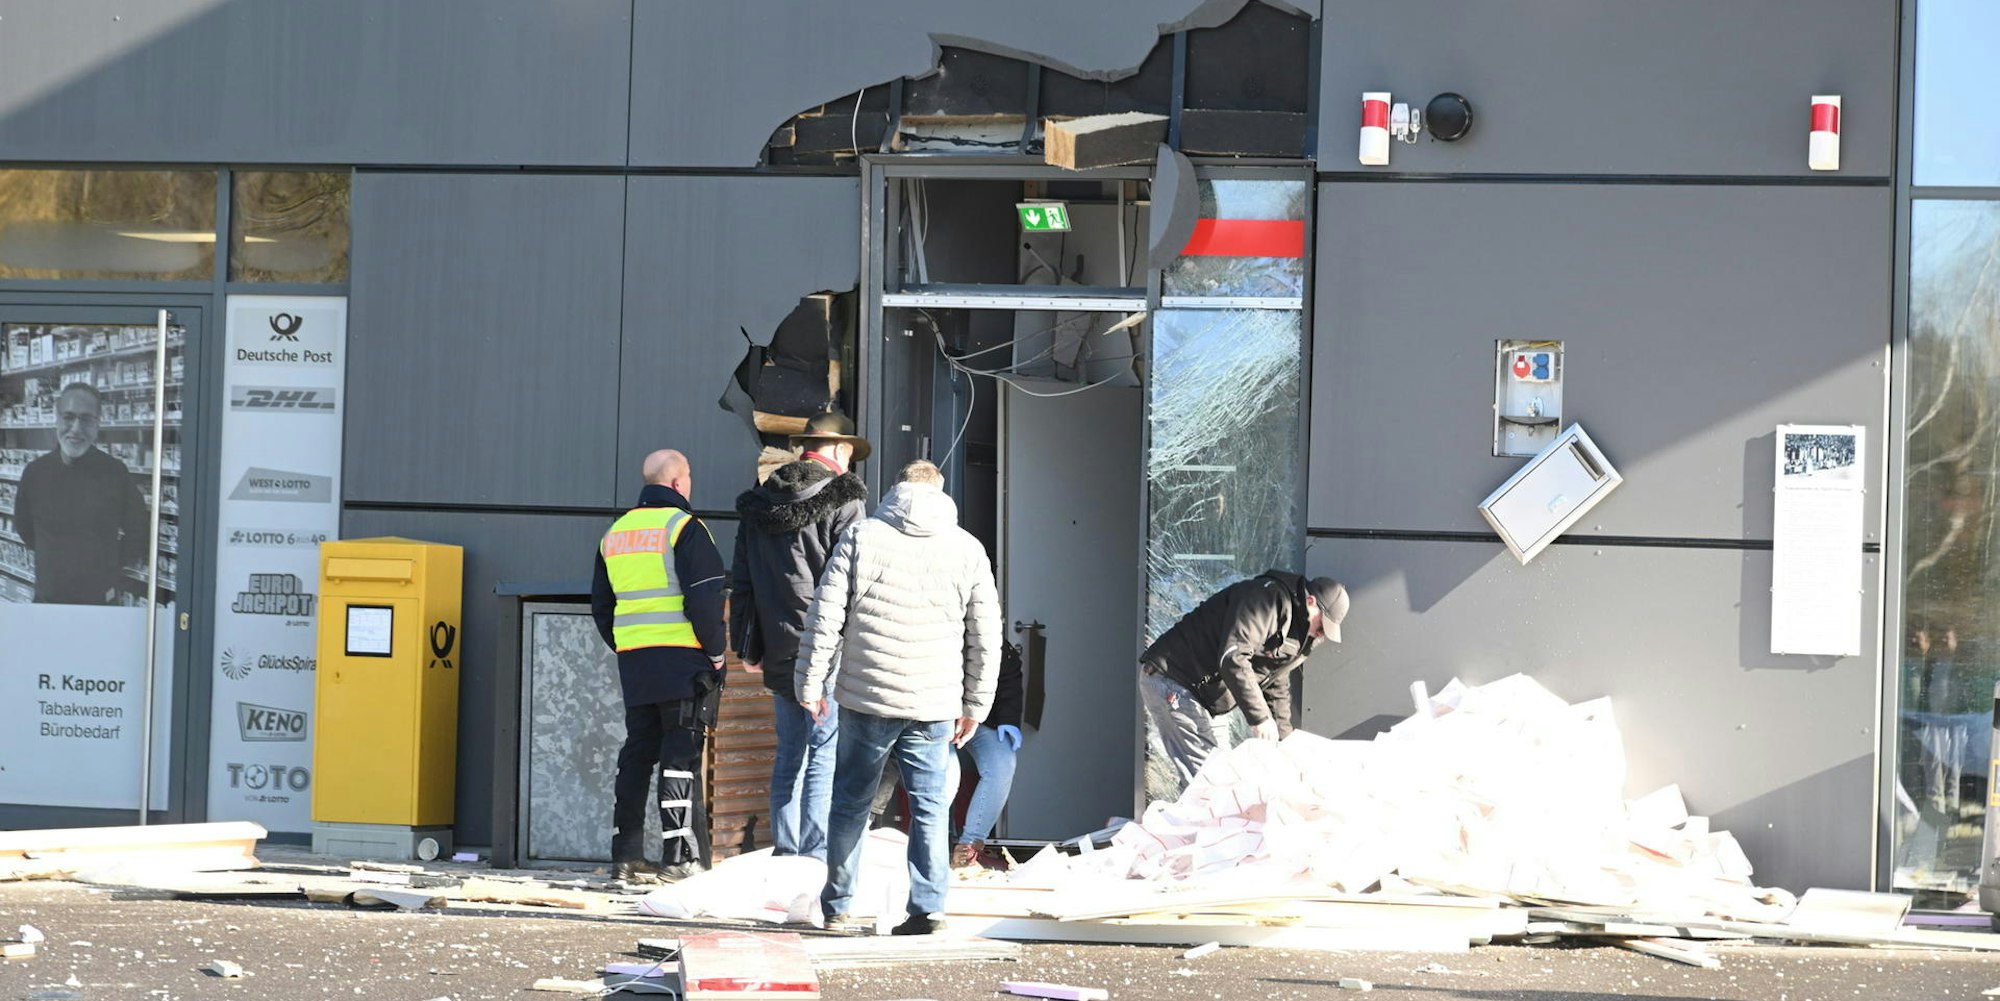 Schwer beschädigt wurde auch die Fassade des Edeka-Markts Hetzenegger durch die Automatensprengung im Vorraum in der Nacht zu Mittwoch.